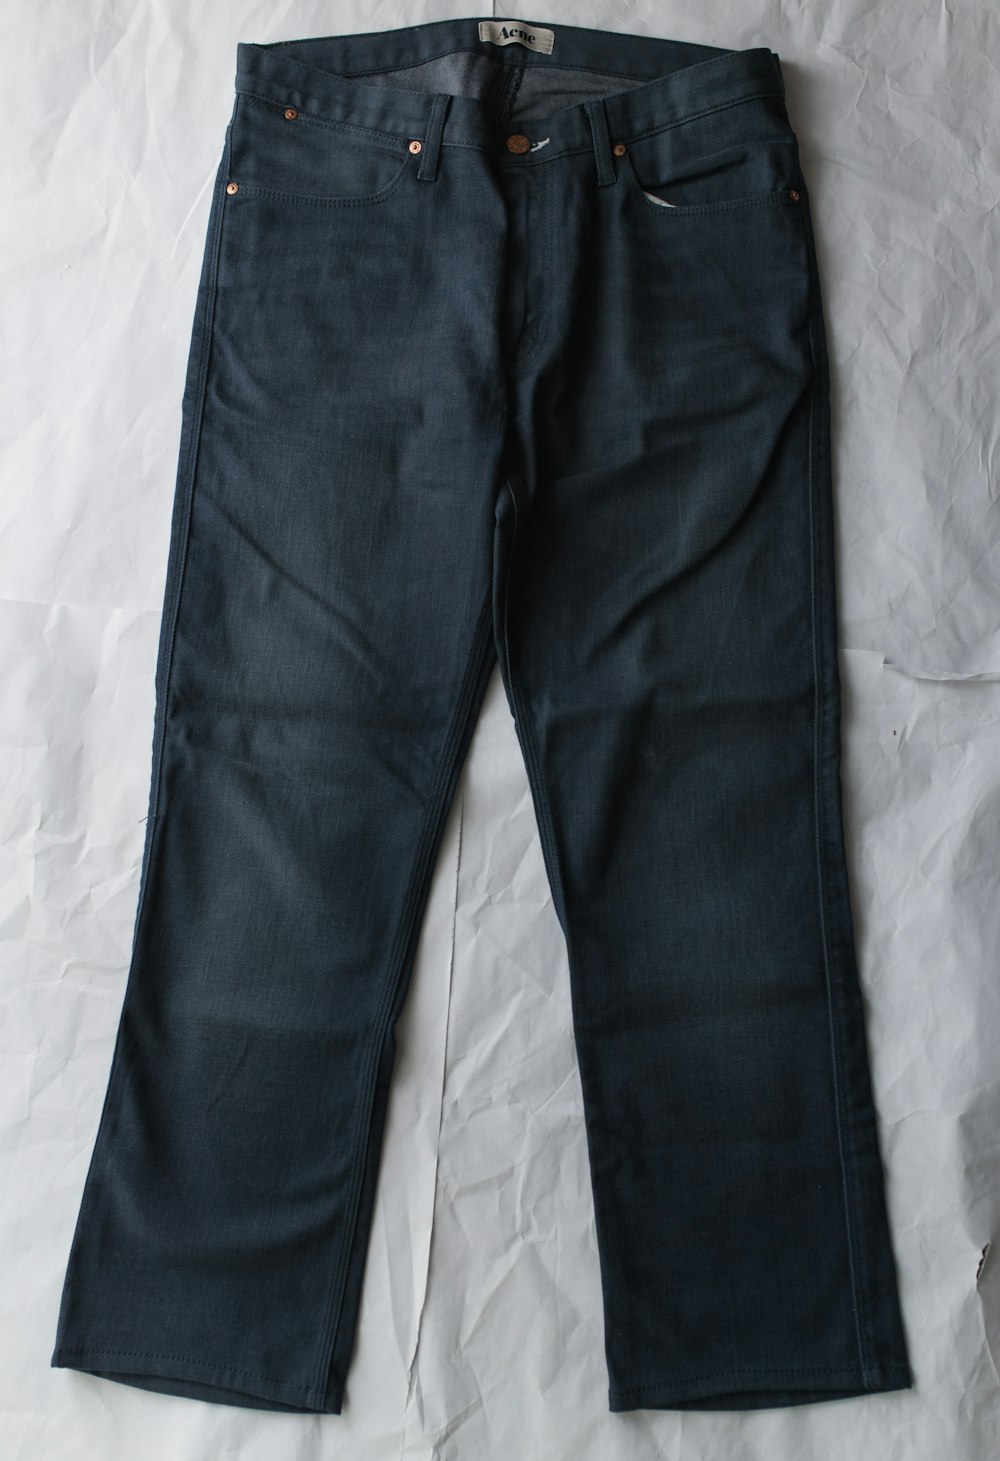 Blaue Jeans auf weißem Textil